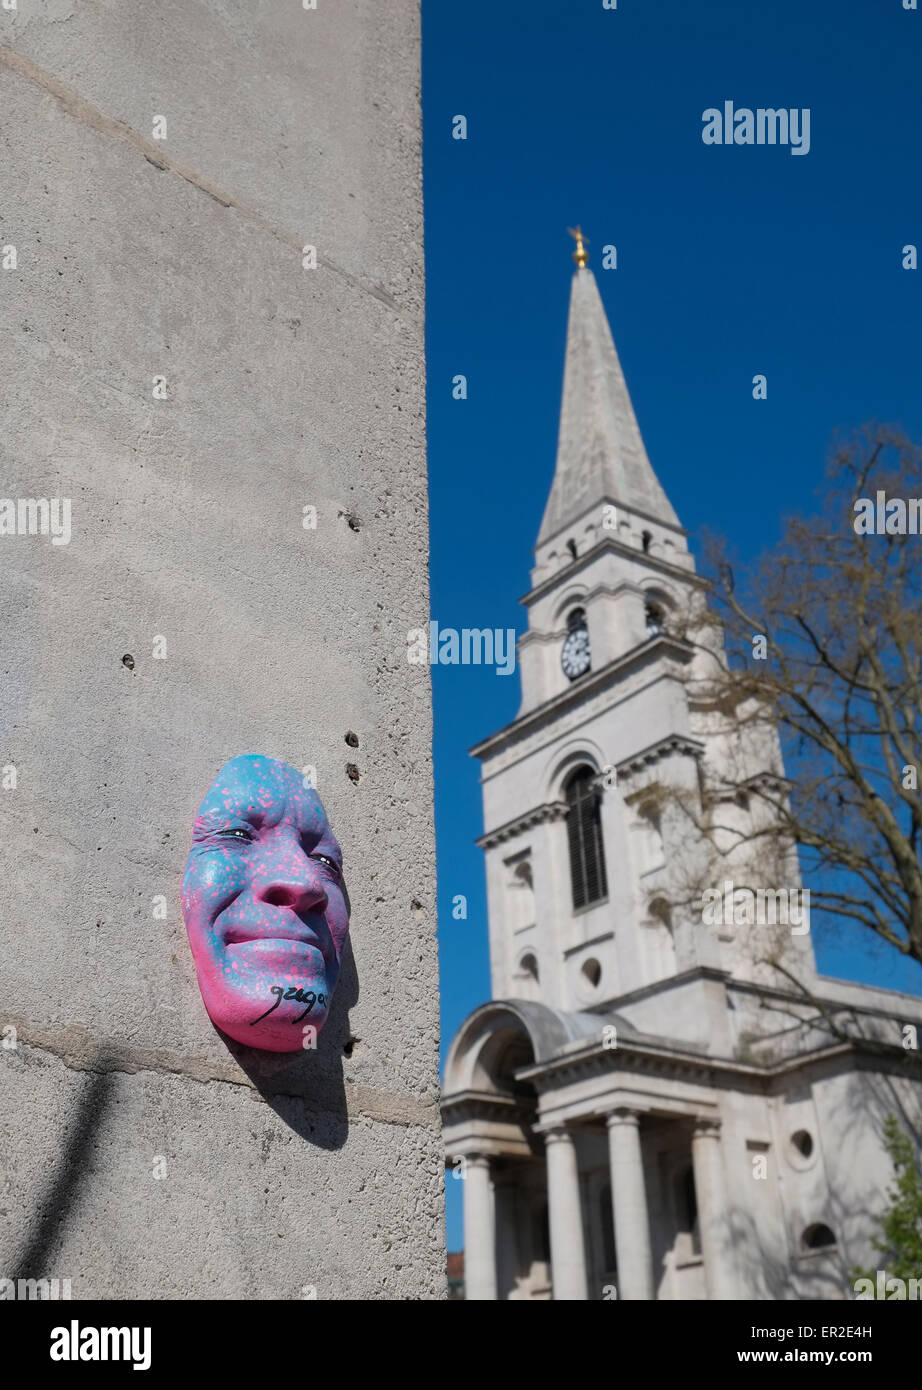 Face sculpture de l'artiste de rue française Gregos avec Christ Church Spitalfields en arrière-plan. Spitalfields, Londres, Royaume-Uni. Banque D'Images